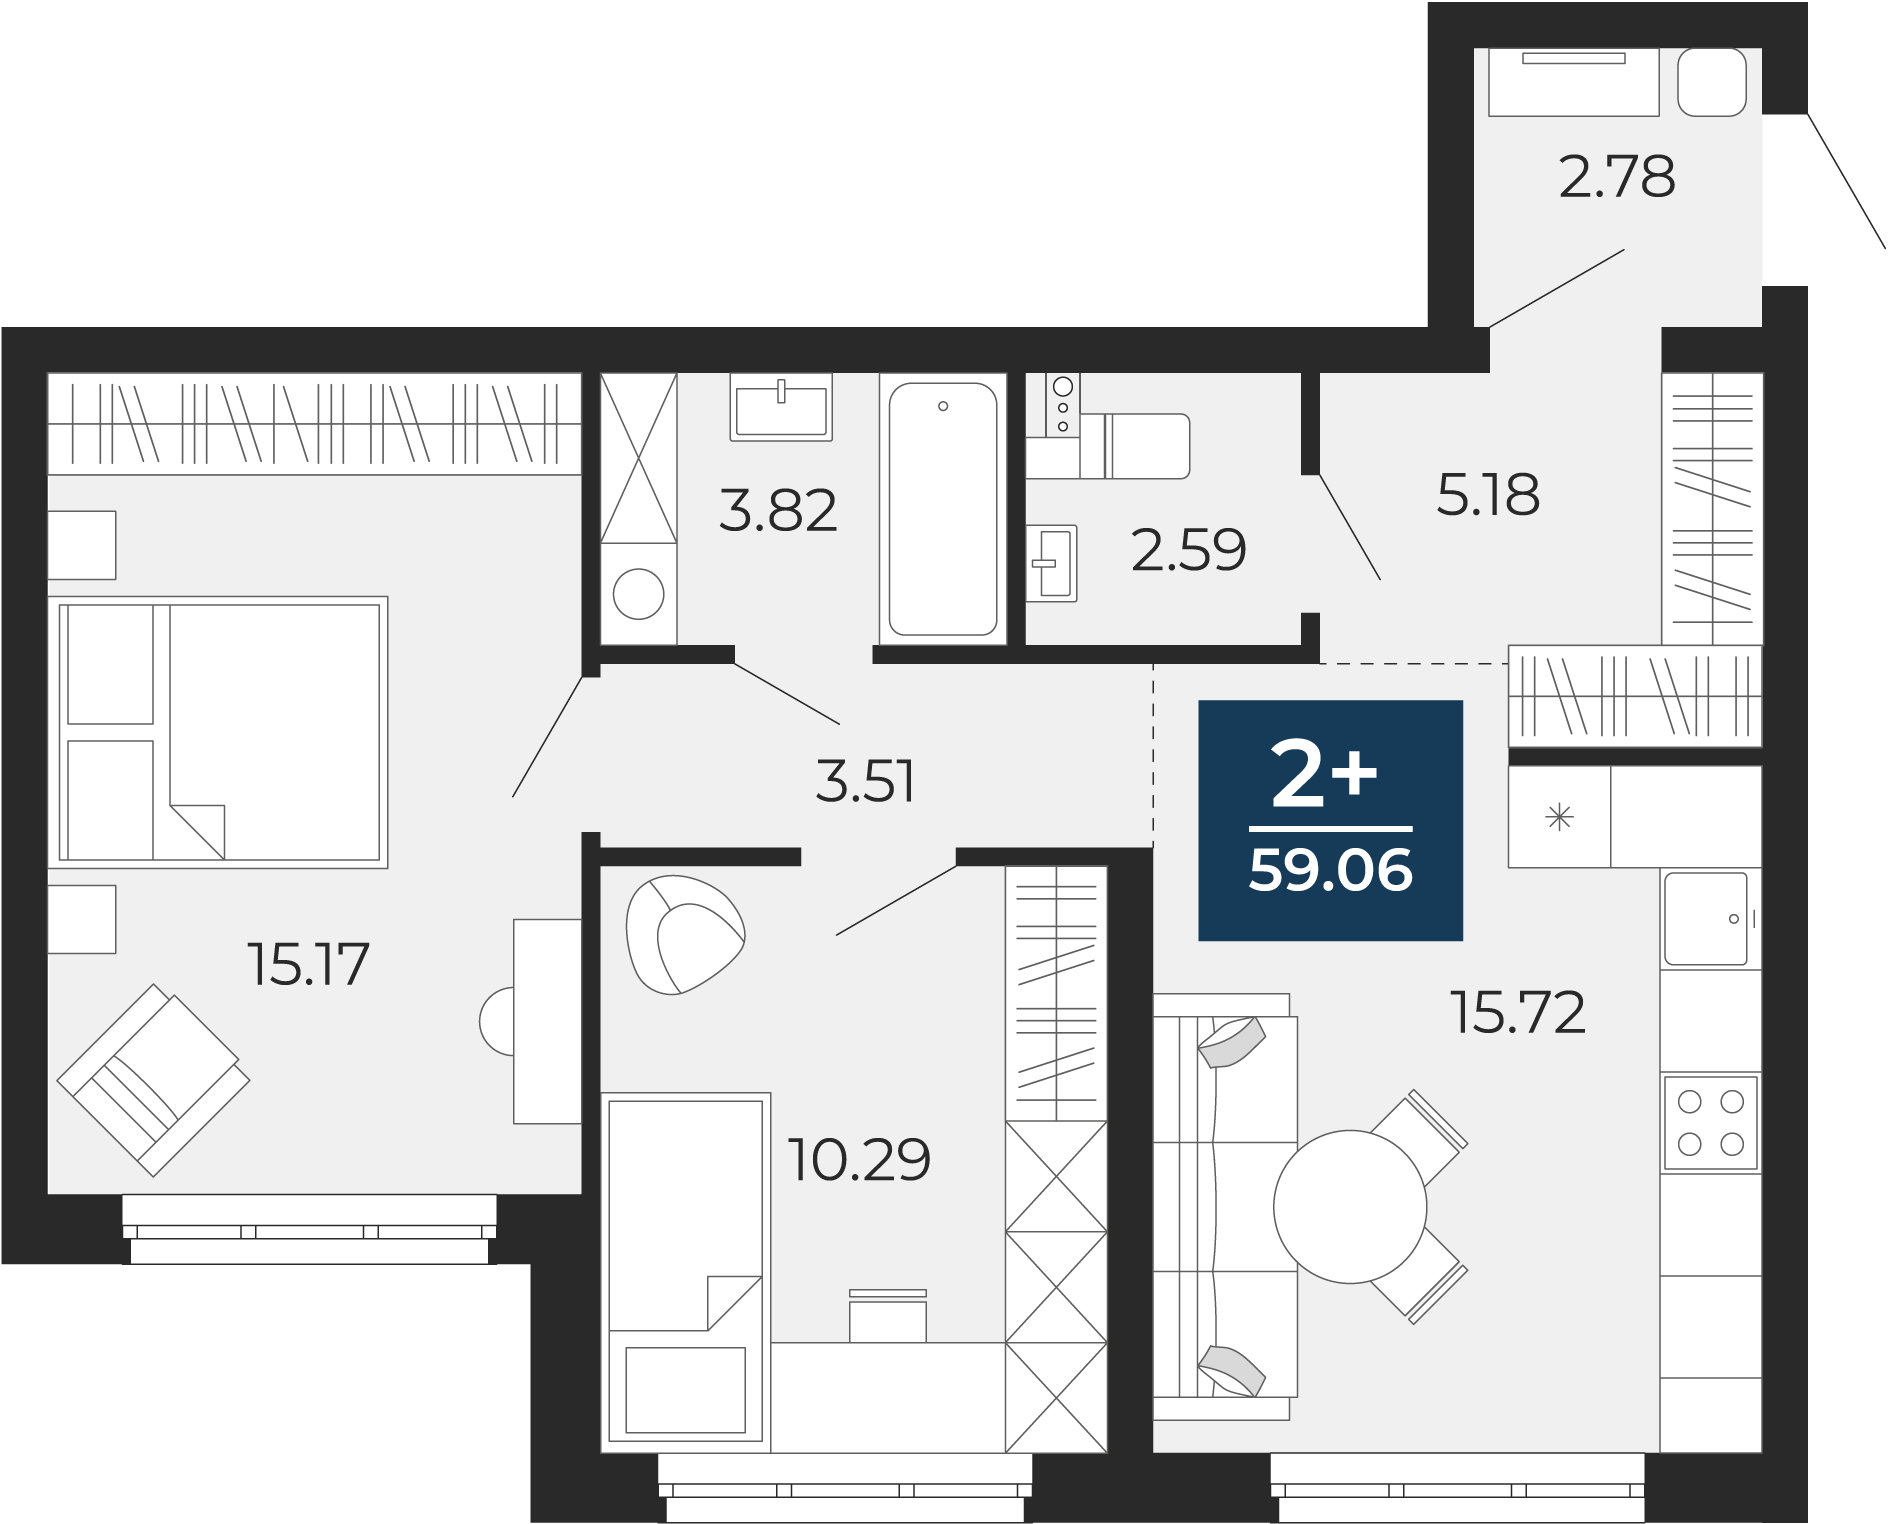 Квартира № 348, 2-комнатная, 59.06 кв. м, 1 этаж